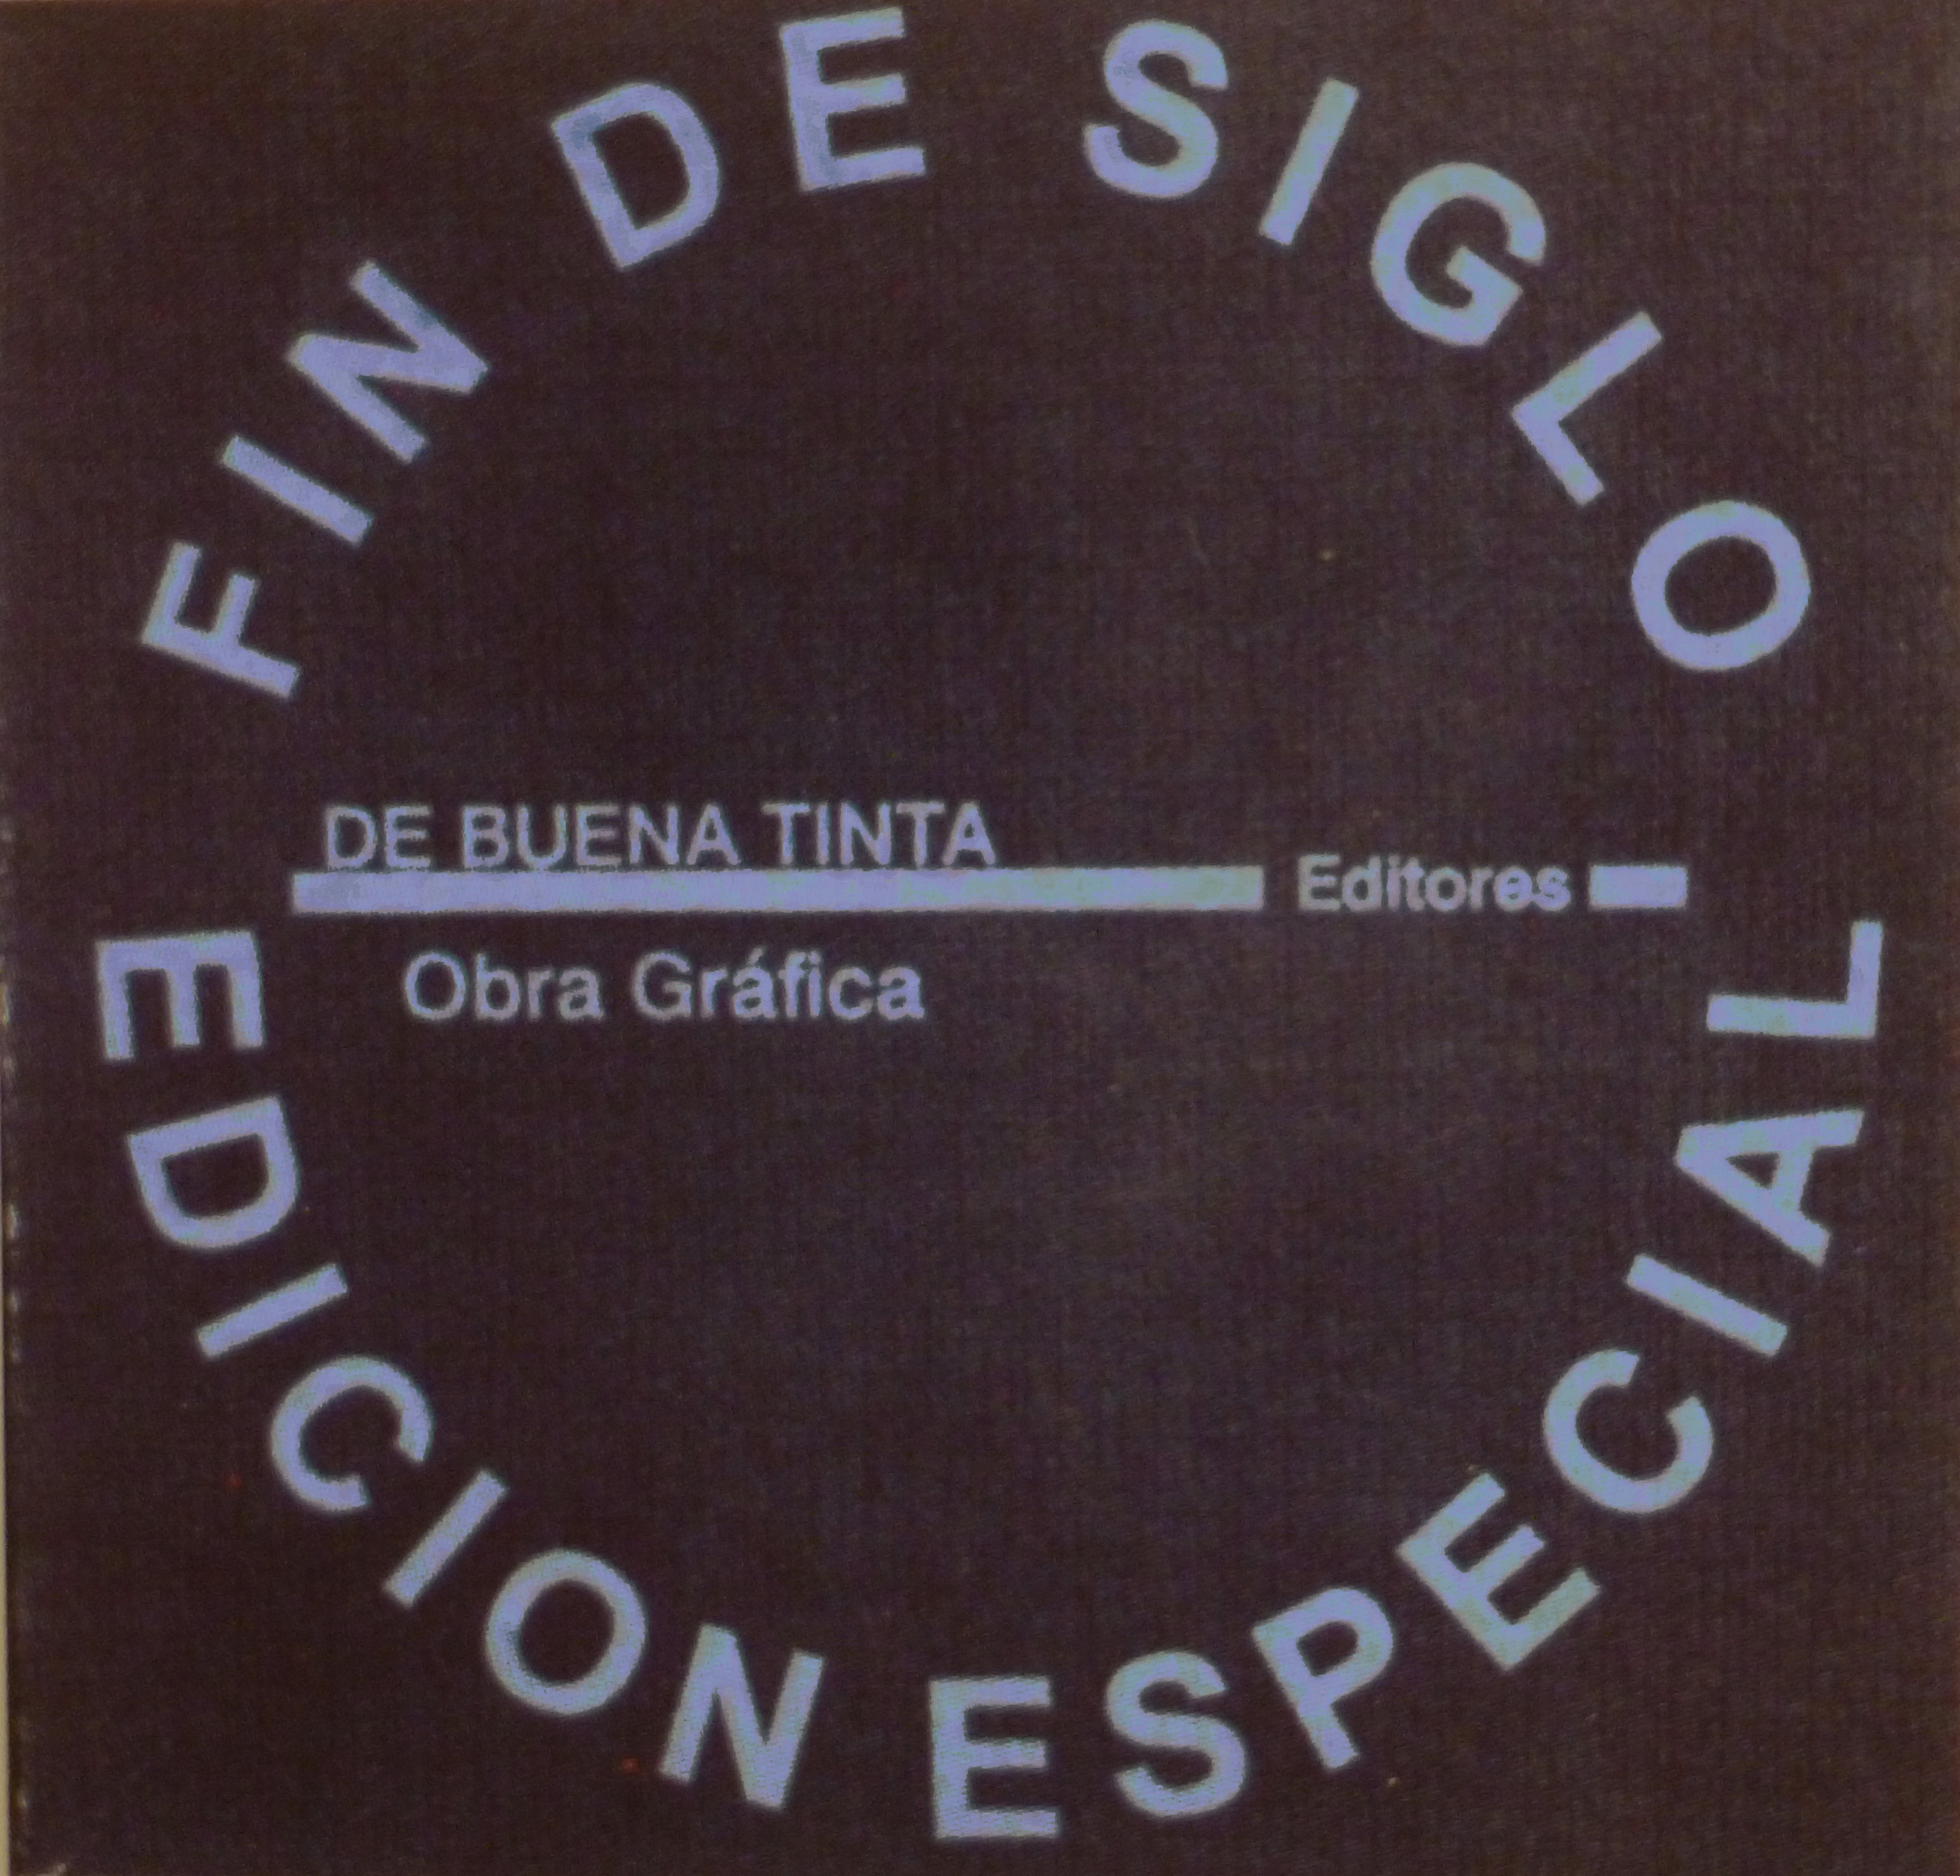 Javier Cebrián - Fin de Siglo - 24 x 24 cm. - 1996